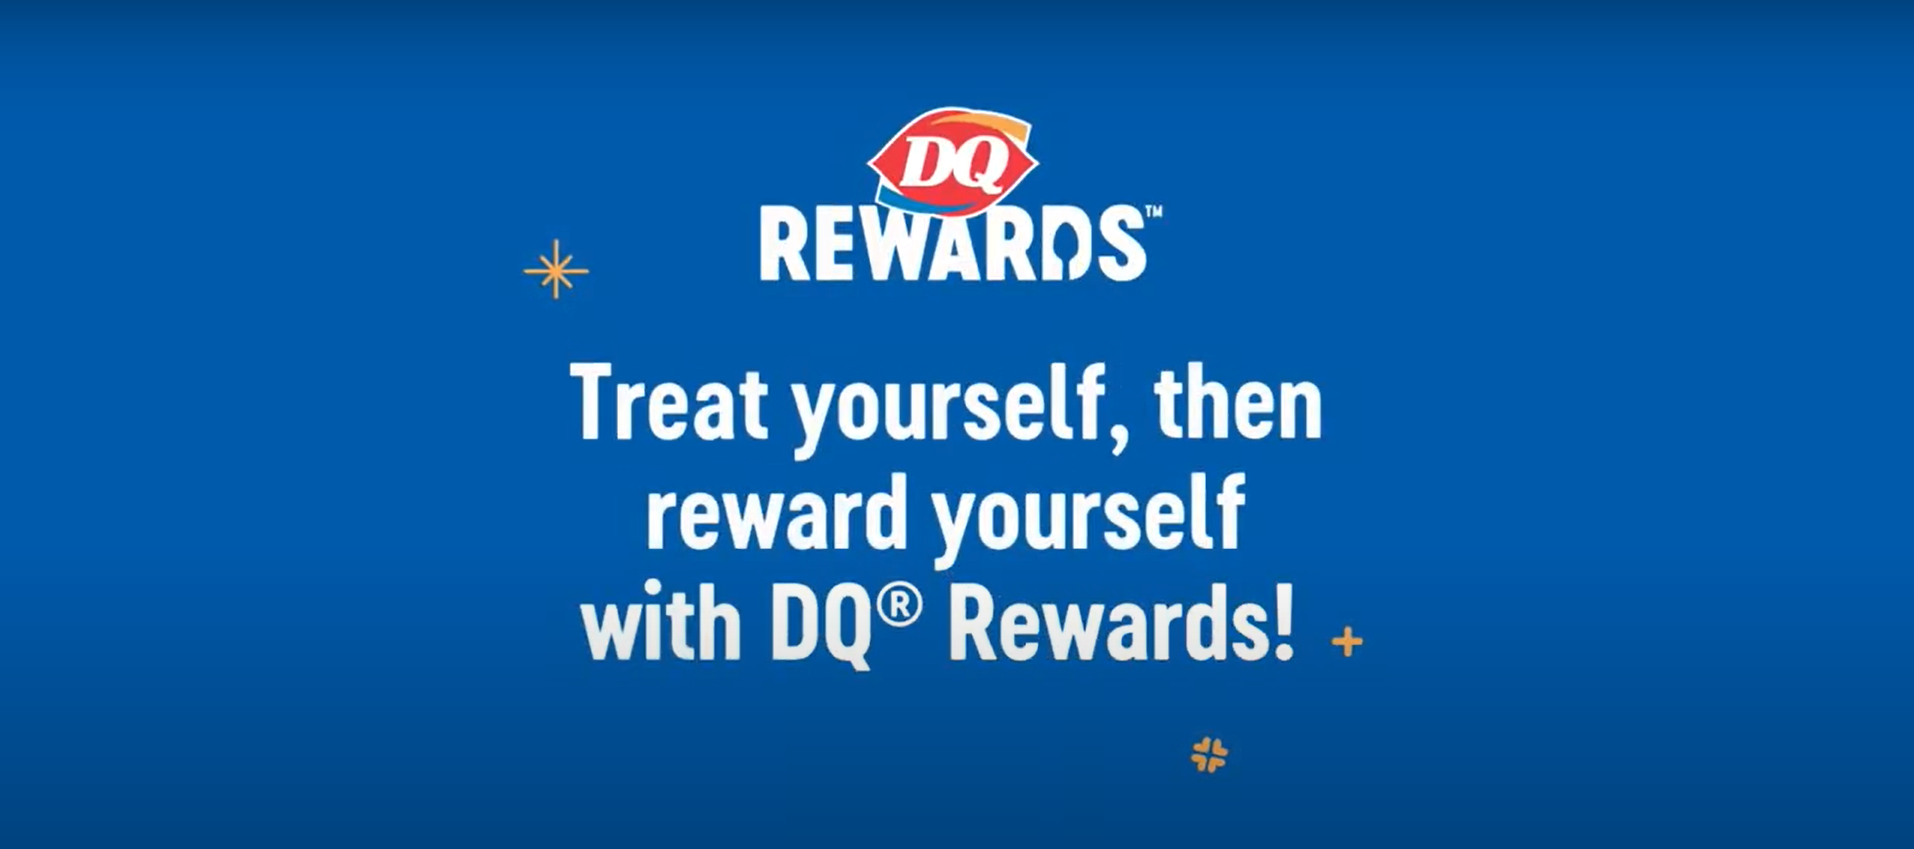 DQ Rewards informational video